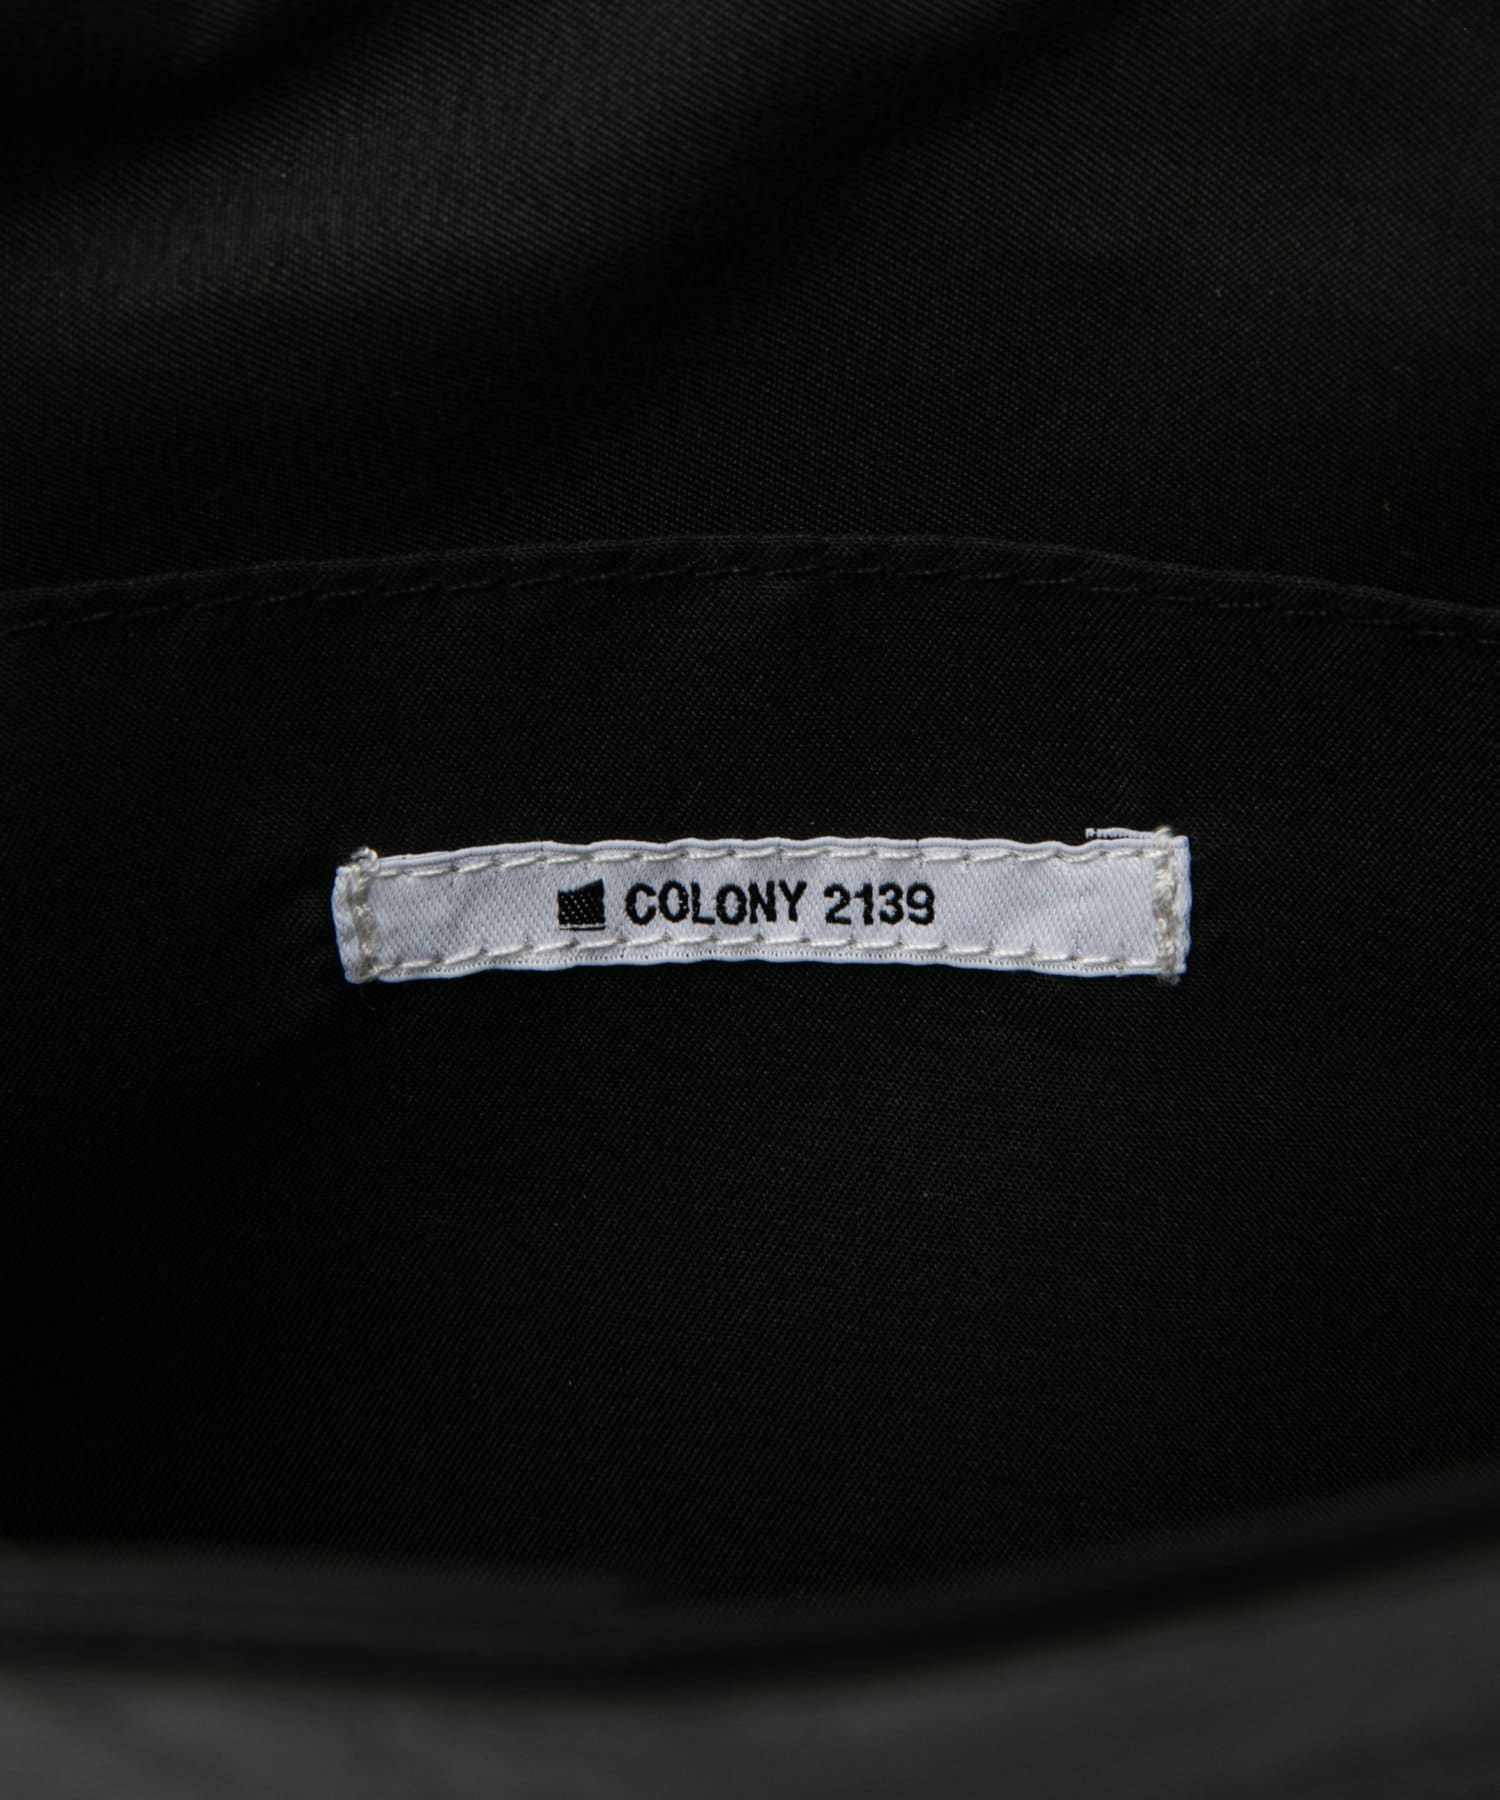 COLONY 2139(コロニー トゥーワンスリーナイン) 加工PUトートバッグ